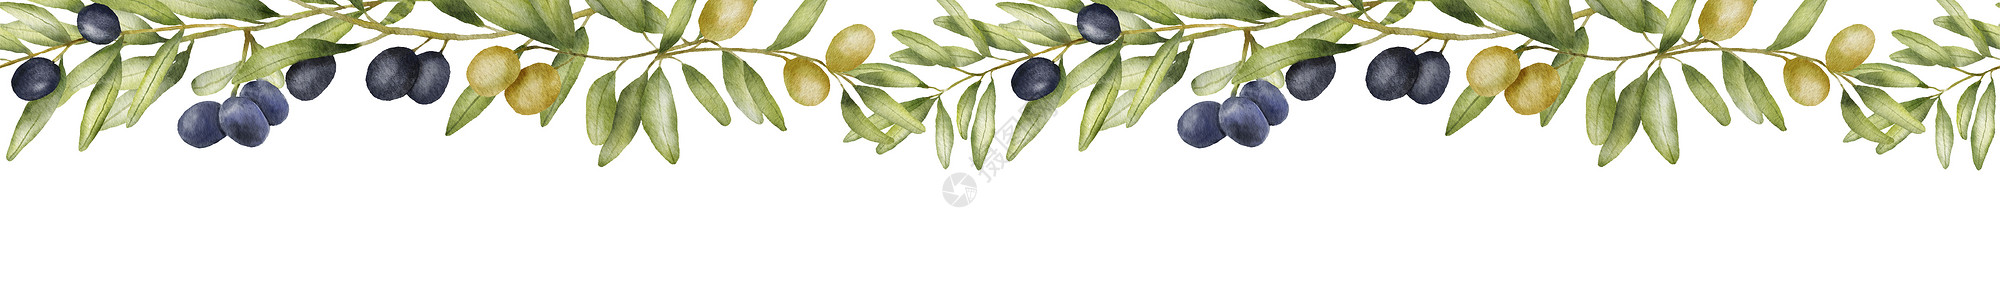 刻叶紫堇带绿色橄榄枝的无缝边界 水彩画 用橄榄叶绘制图示 美食食品 地中海烹饪品背景